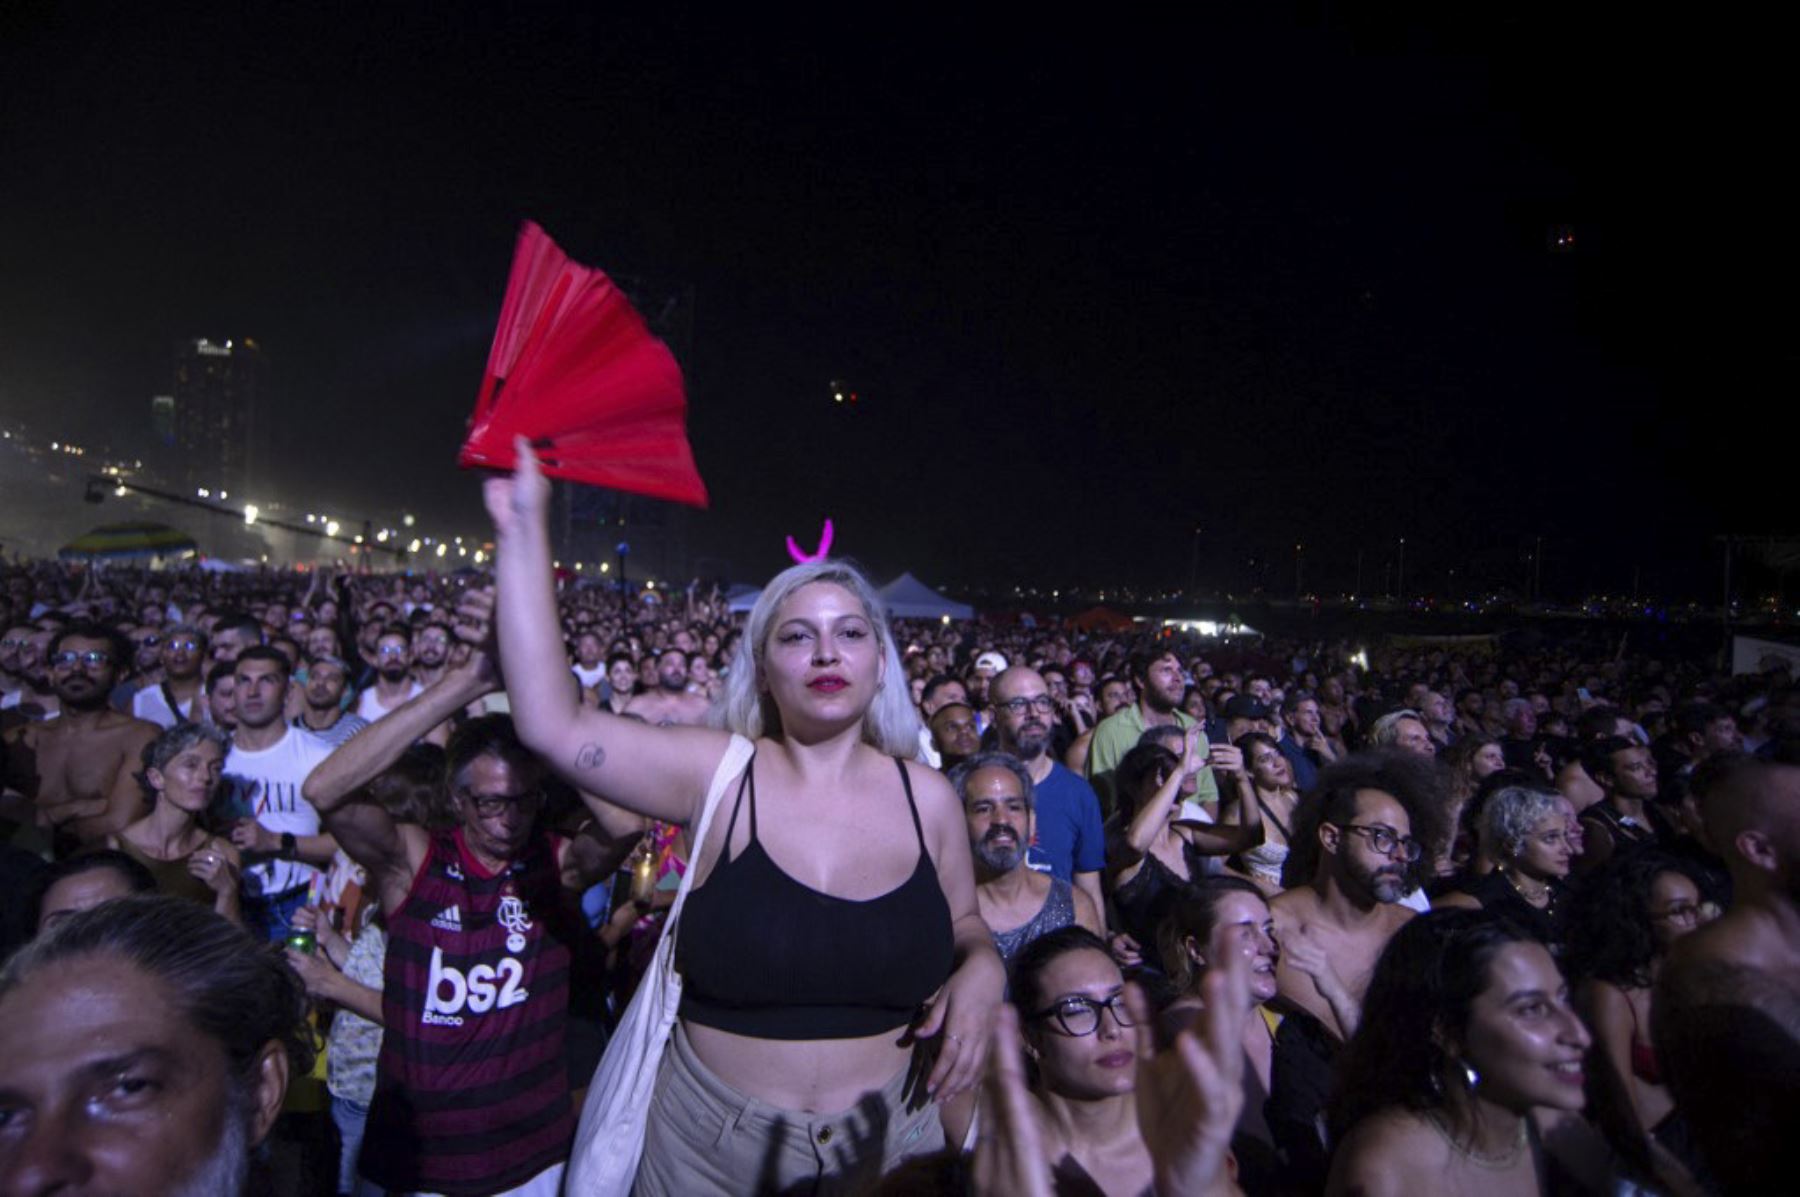 Los fanáticos ven a la estrella del pop estadounidense Madonna actuar durante un concierto gratuito en la playa de Copacabana en Río de Janeiro, Brasil, el 4 de mayo de 2024.†. Madonna finalizó su "The Celebration Tour" con una actuación a la que asistieron alrededor de 1,6 millones de entusiastas fans. Foto: AFP